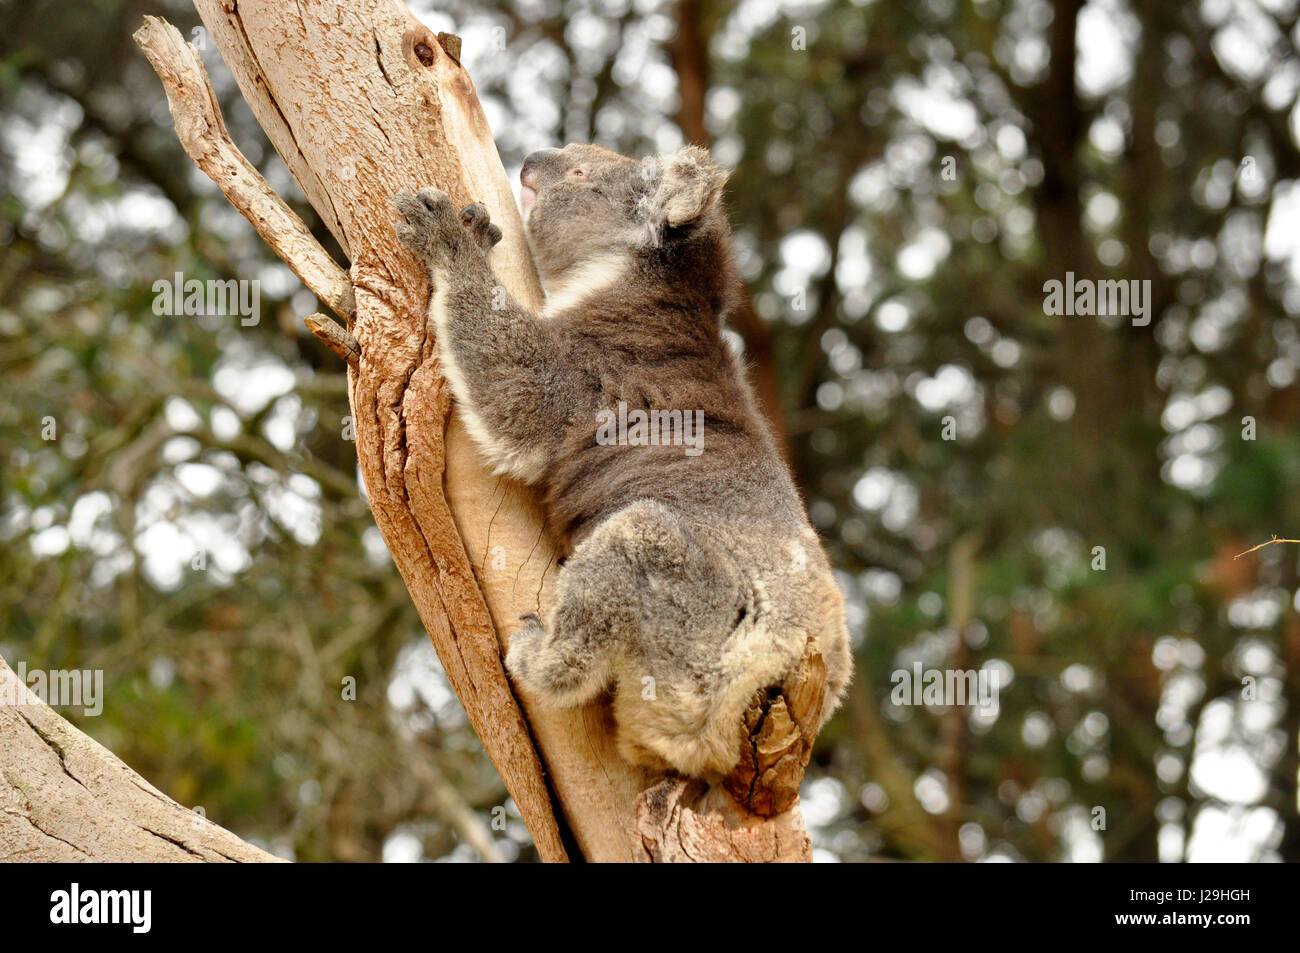 ( Koala Phascolarctos cinereus ) aussi appelé 'Small' de l'ours est un mammifère marsupial Australien. Banque D'Images